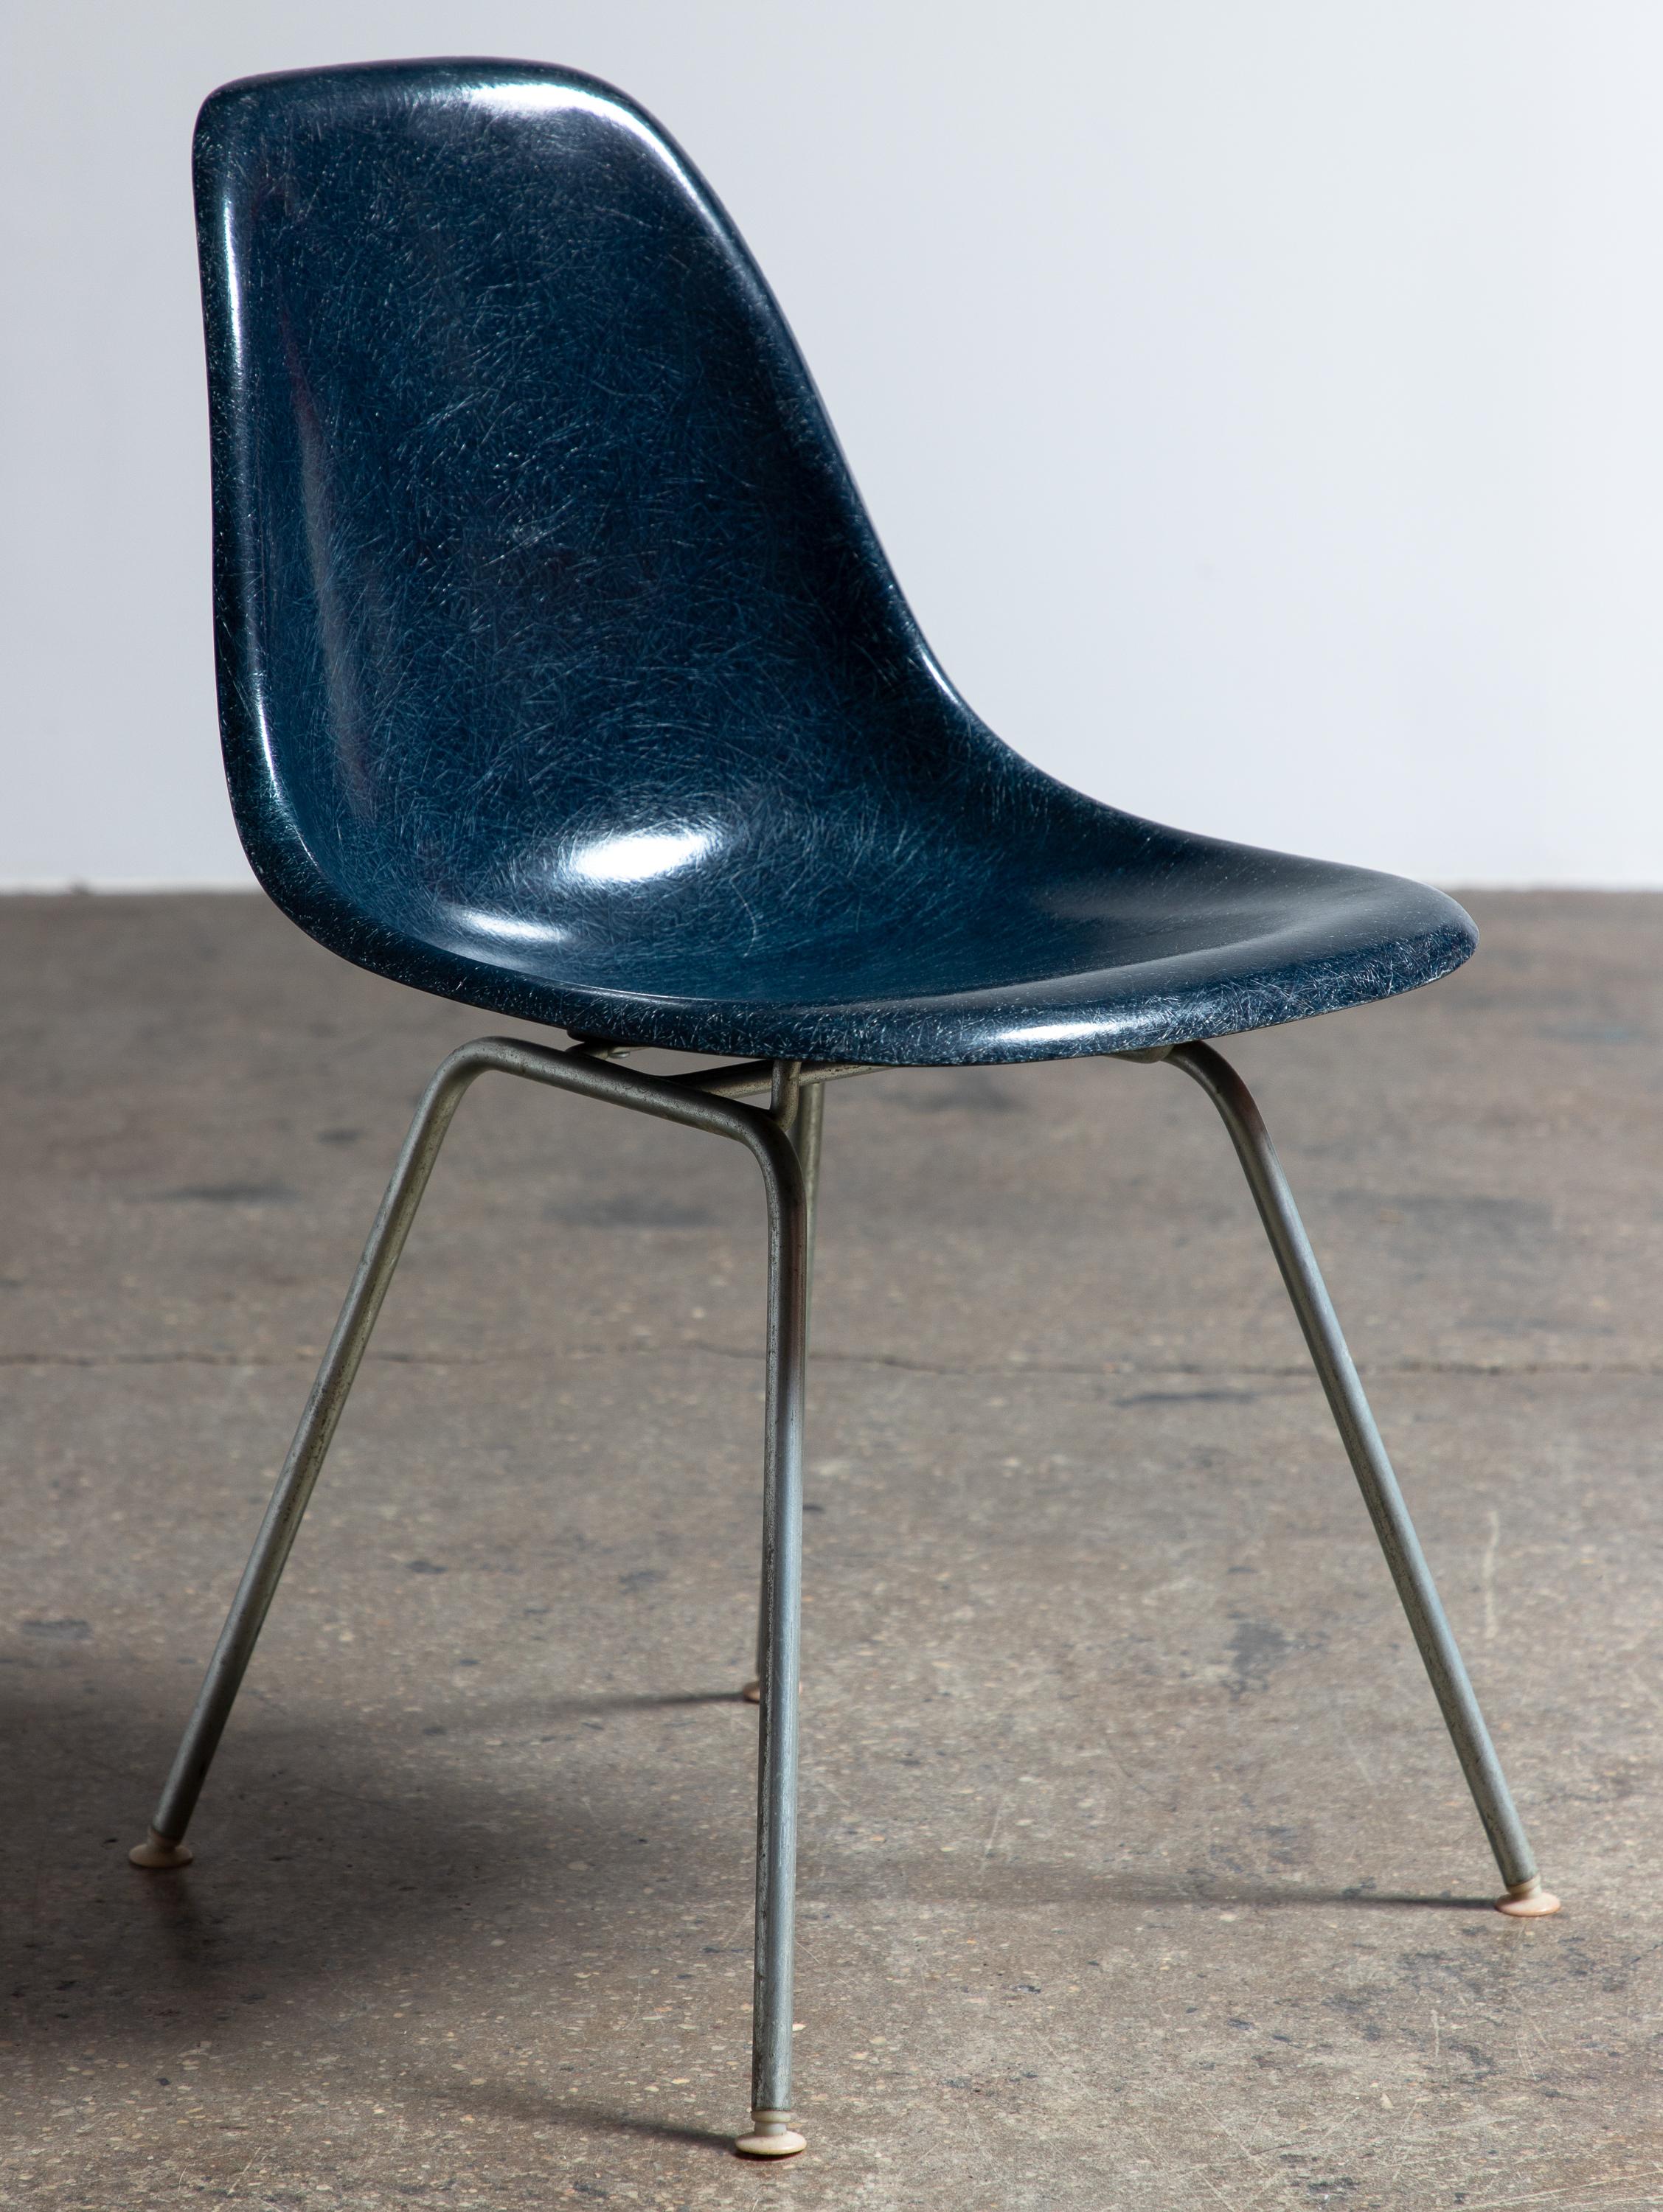 Chaise originale en fibre de verre moulée, conçue par Charles et Ray Eames pour Herman Miller. Les chaises vintage à coque sont appréciées pour leur patine attrayante, la texture distincte des fils et la belle profondeur des couleurs observées dans